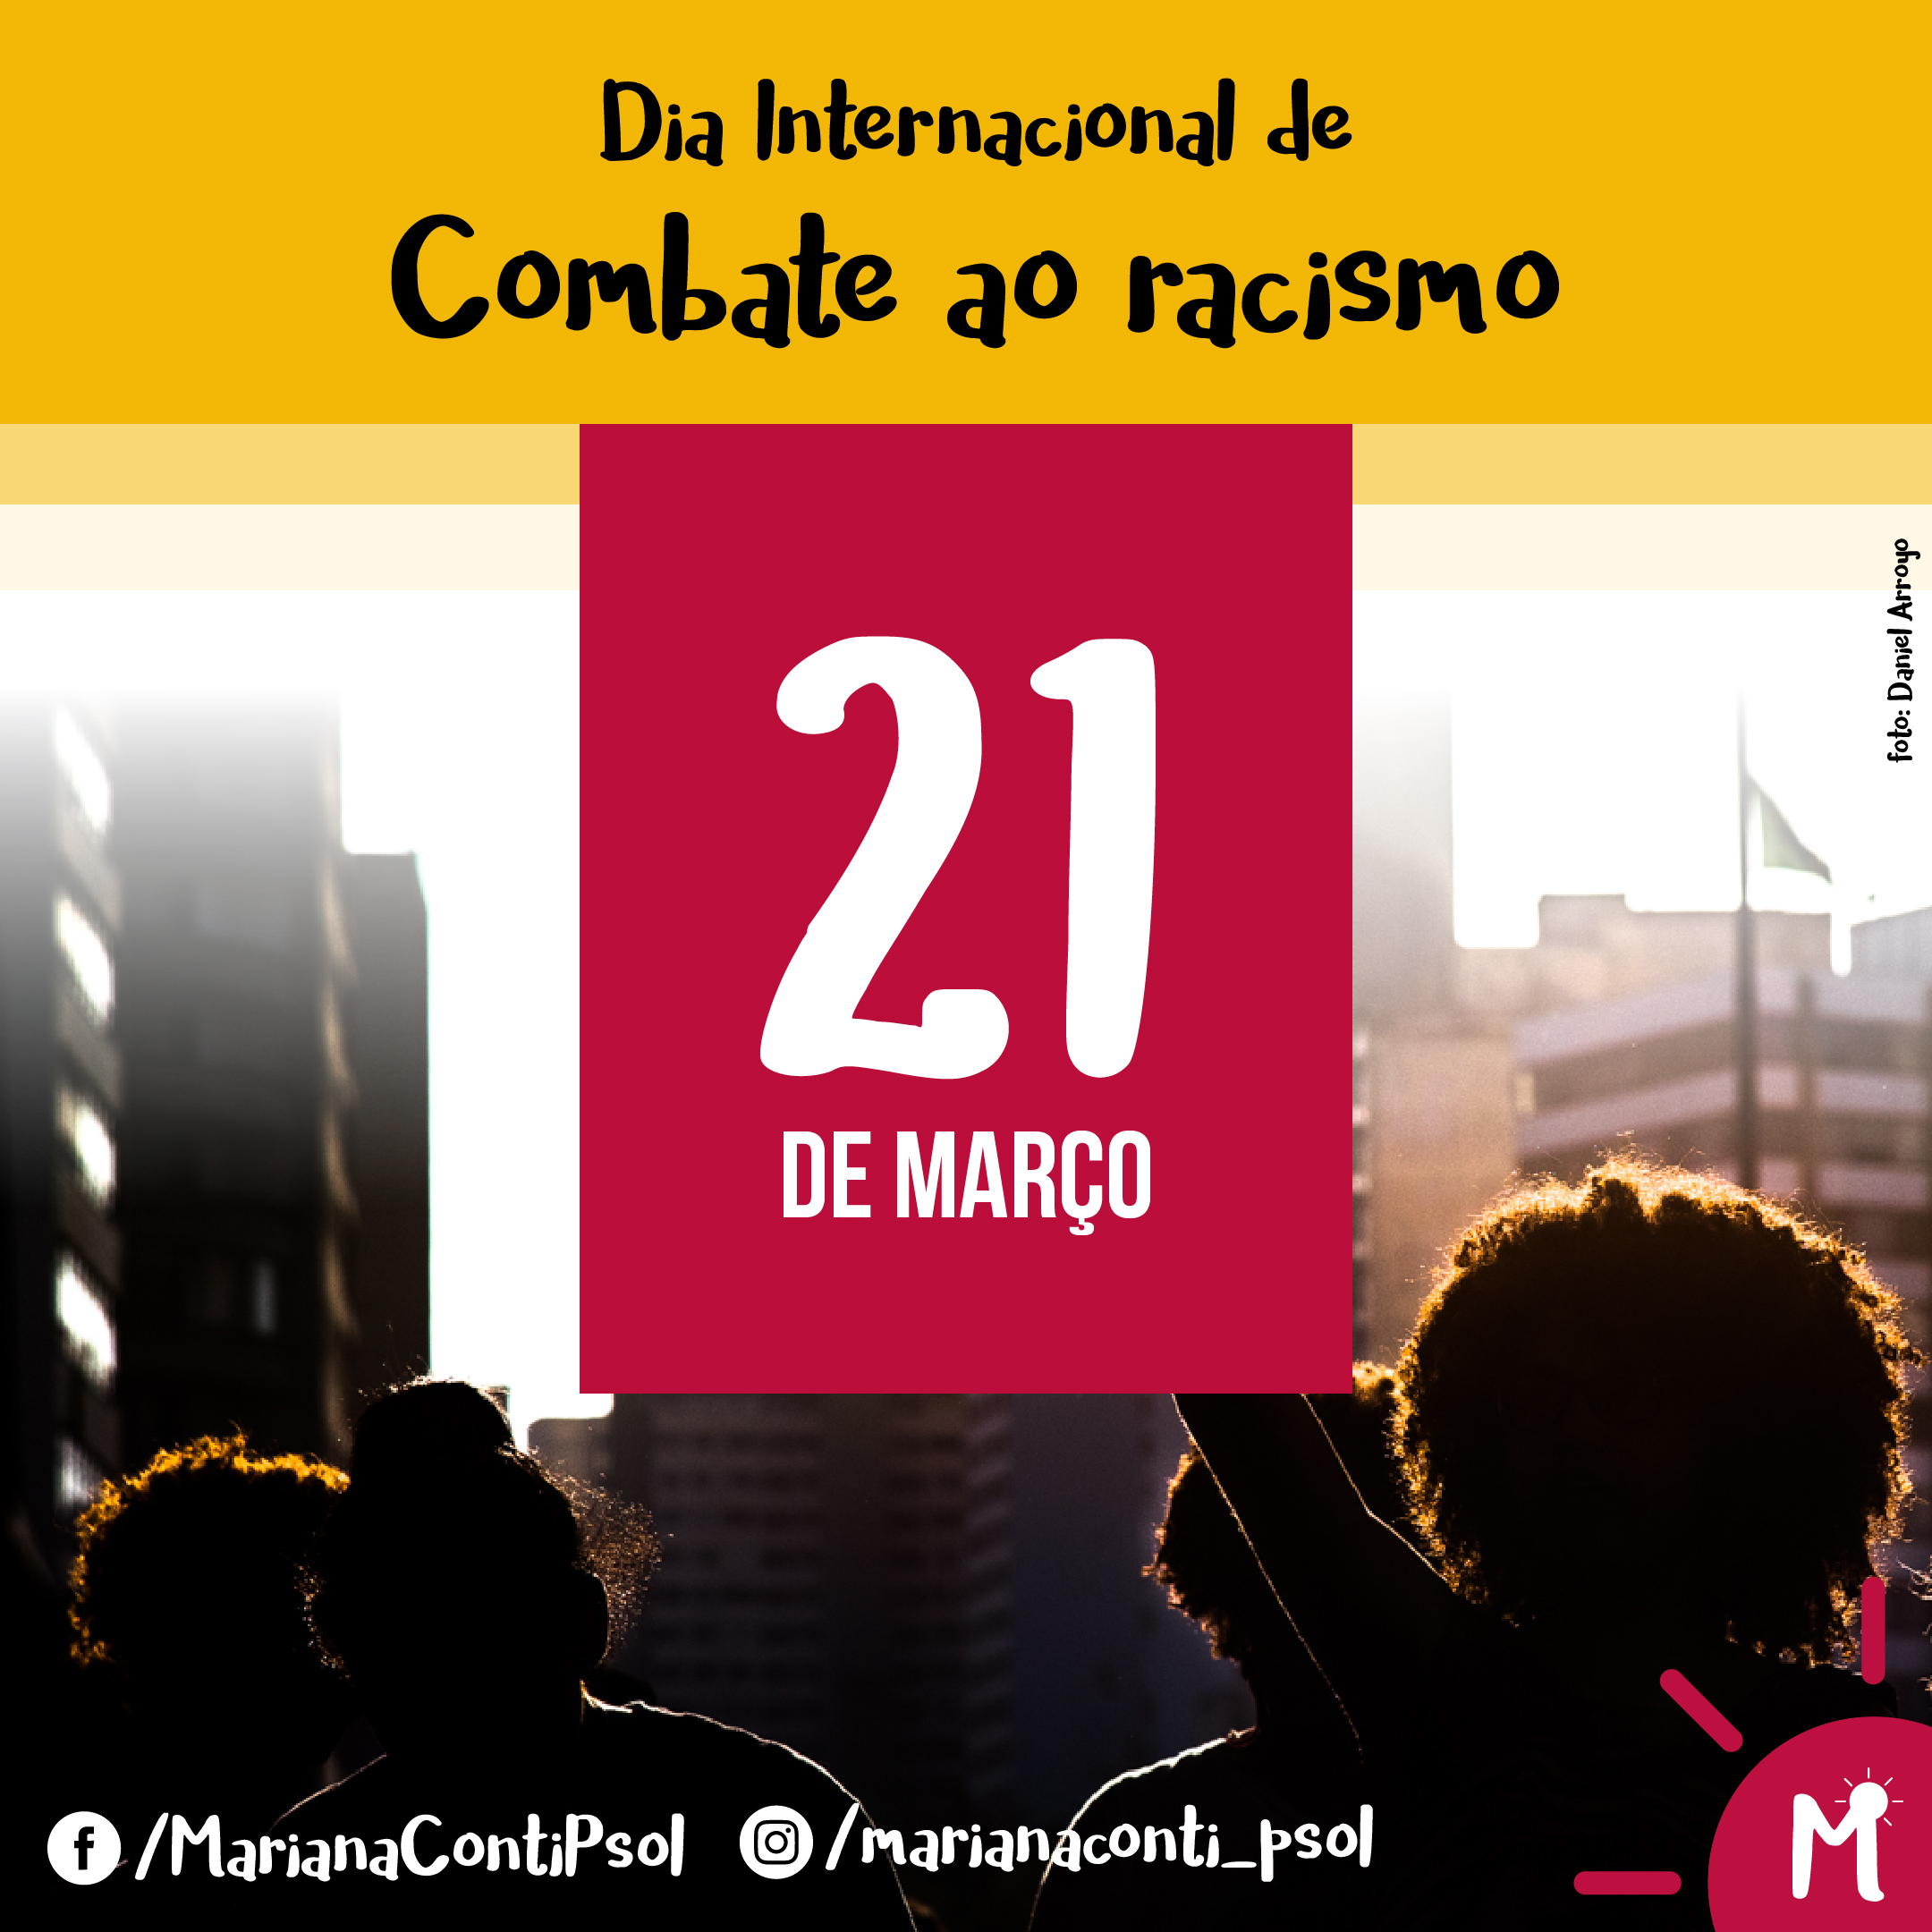 21 de março, Dia Internacional de Combate ao Racismo